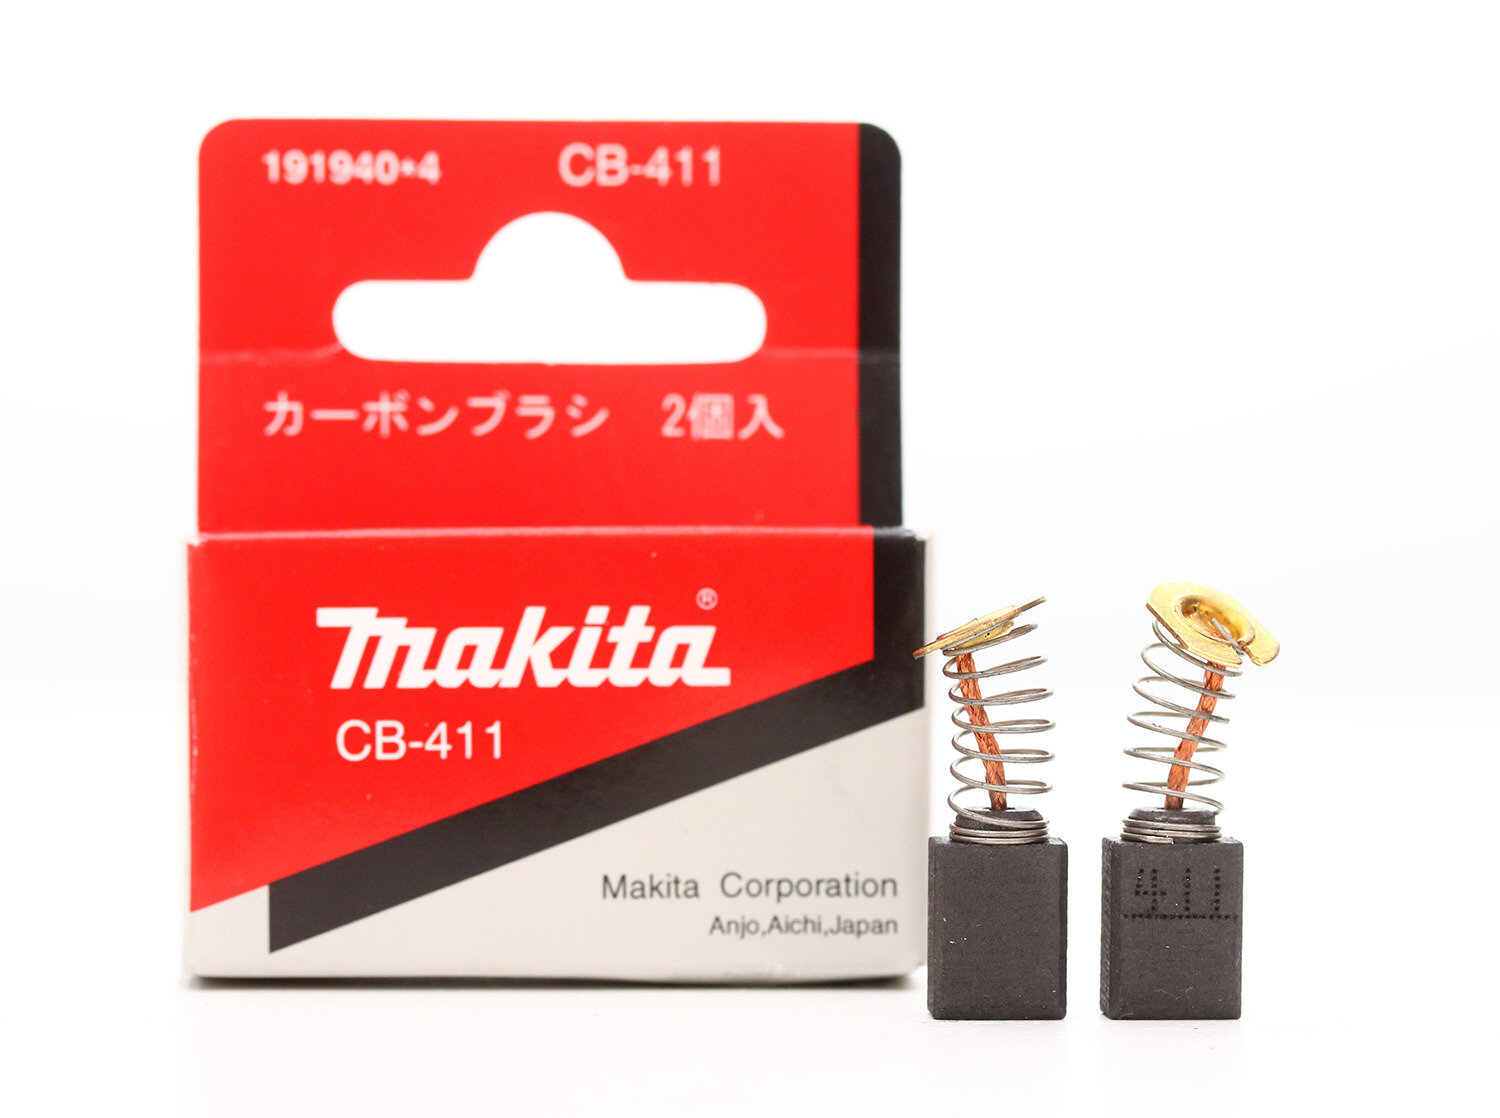 Щетки графитовые CB-411, 191940-4 Makita, комплект, 2 шт.